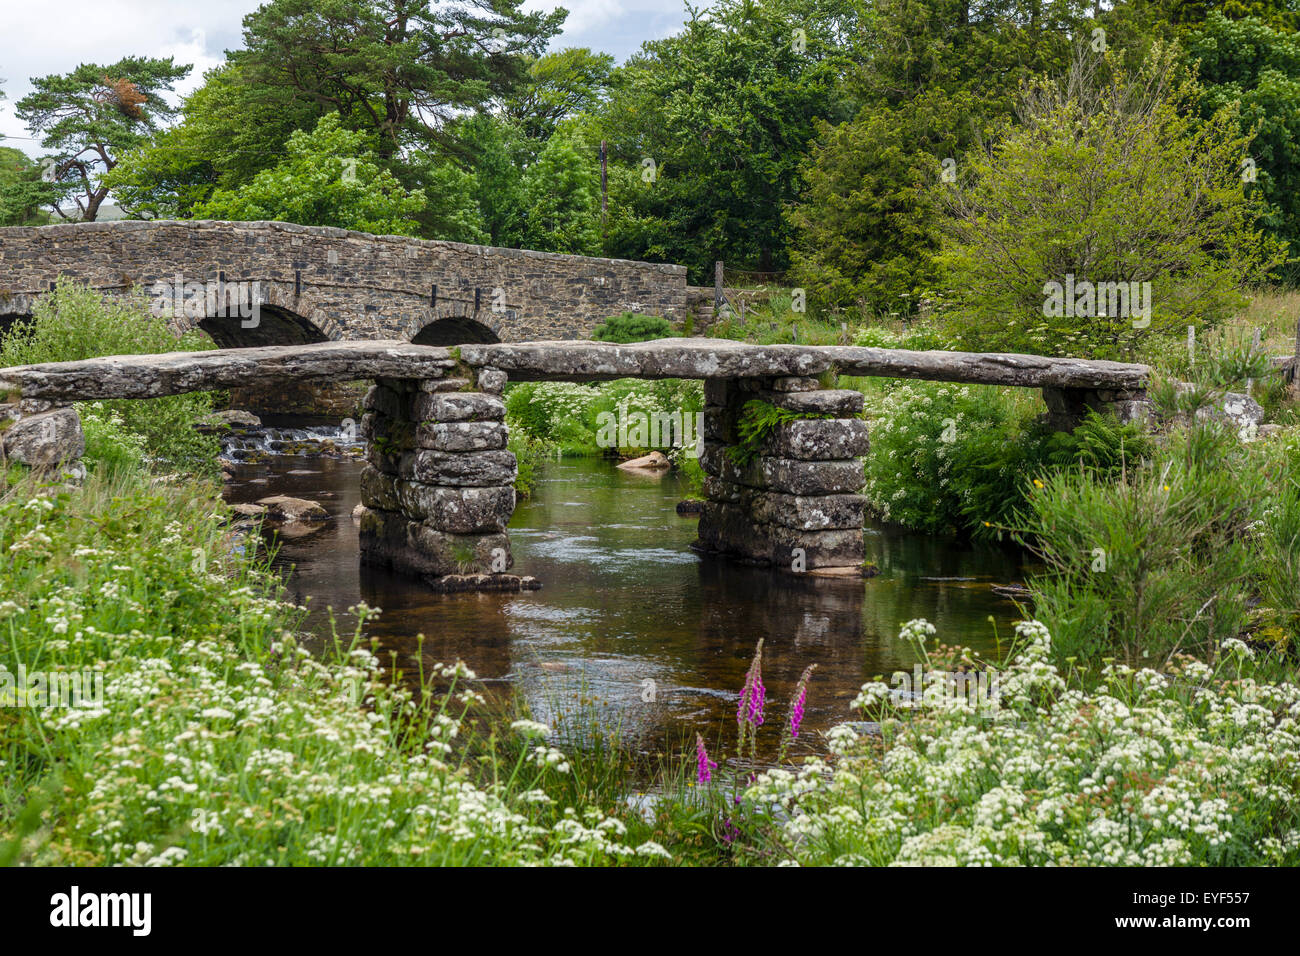 The historic clapper bridge over the East Dart River in Postbridge, Dartmoor, Devon, England, UK Stock Photo